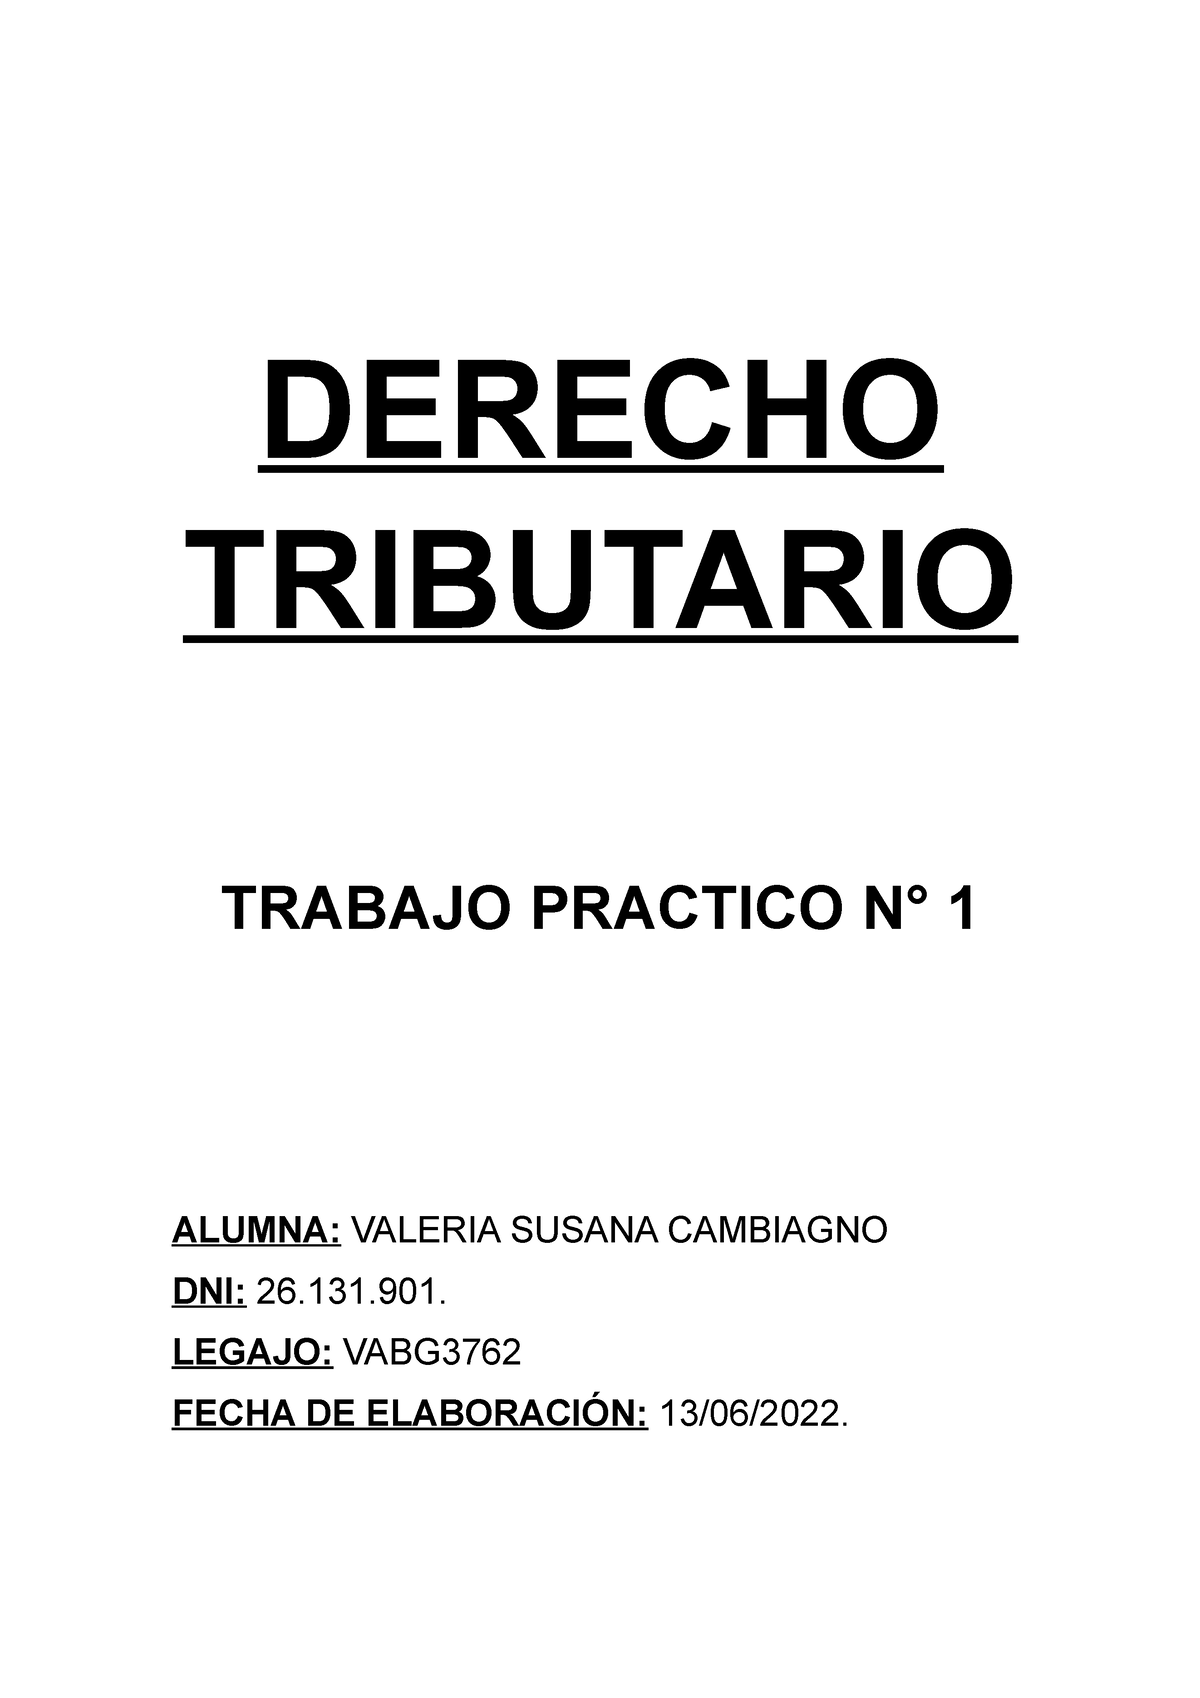 Tp 1 Derecho Tributario Derecho Tributario Trabajo Practico N° 1 Alumna Valeria Susana 6854